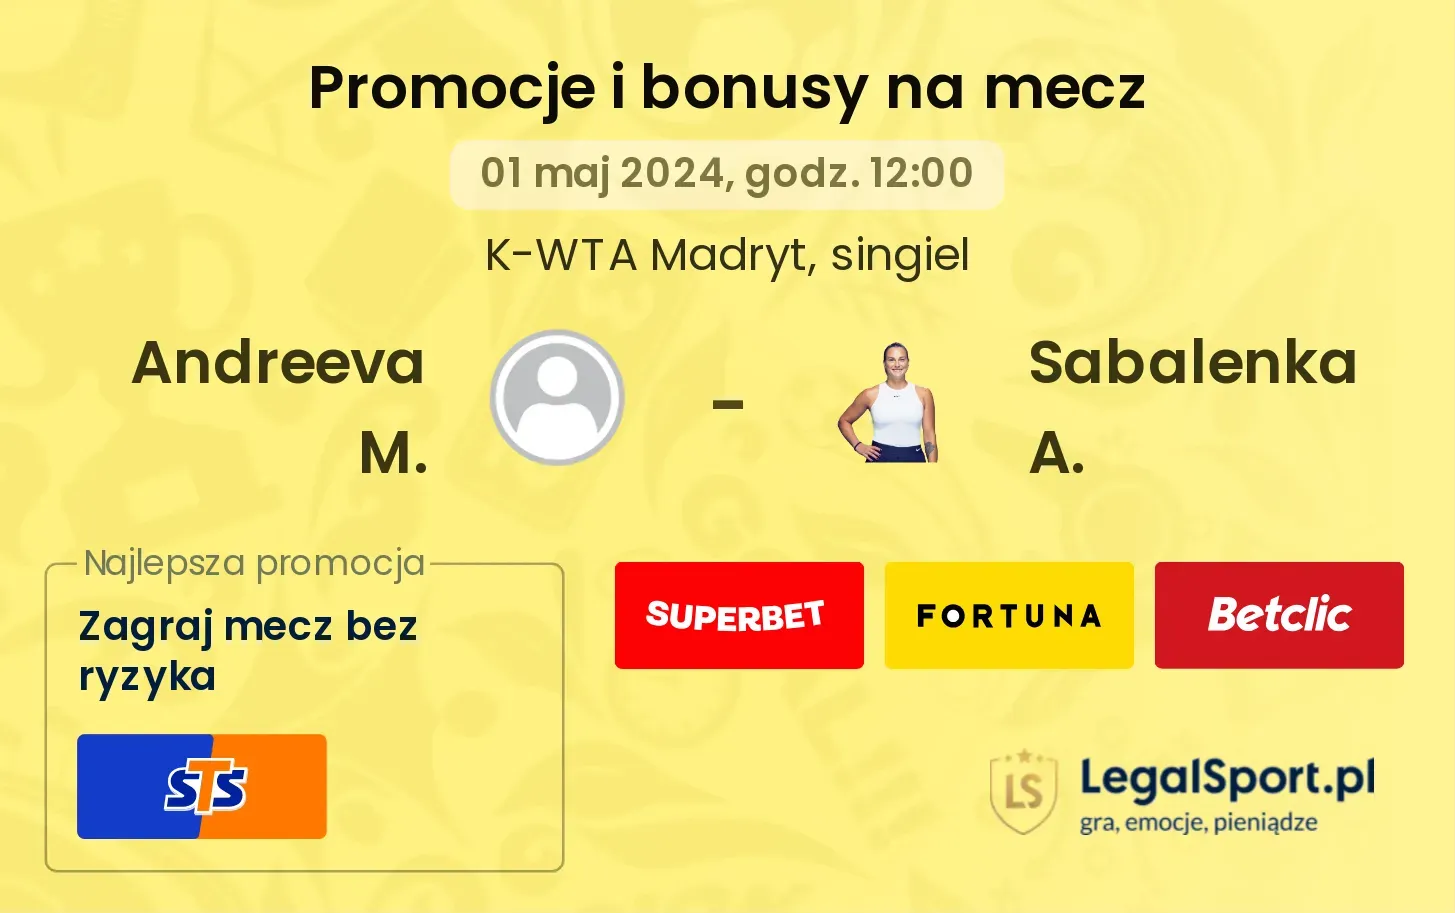 Andreeva M. - Sabalenka A. promocje bonusy na mecz